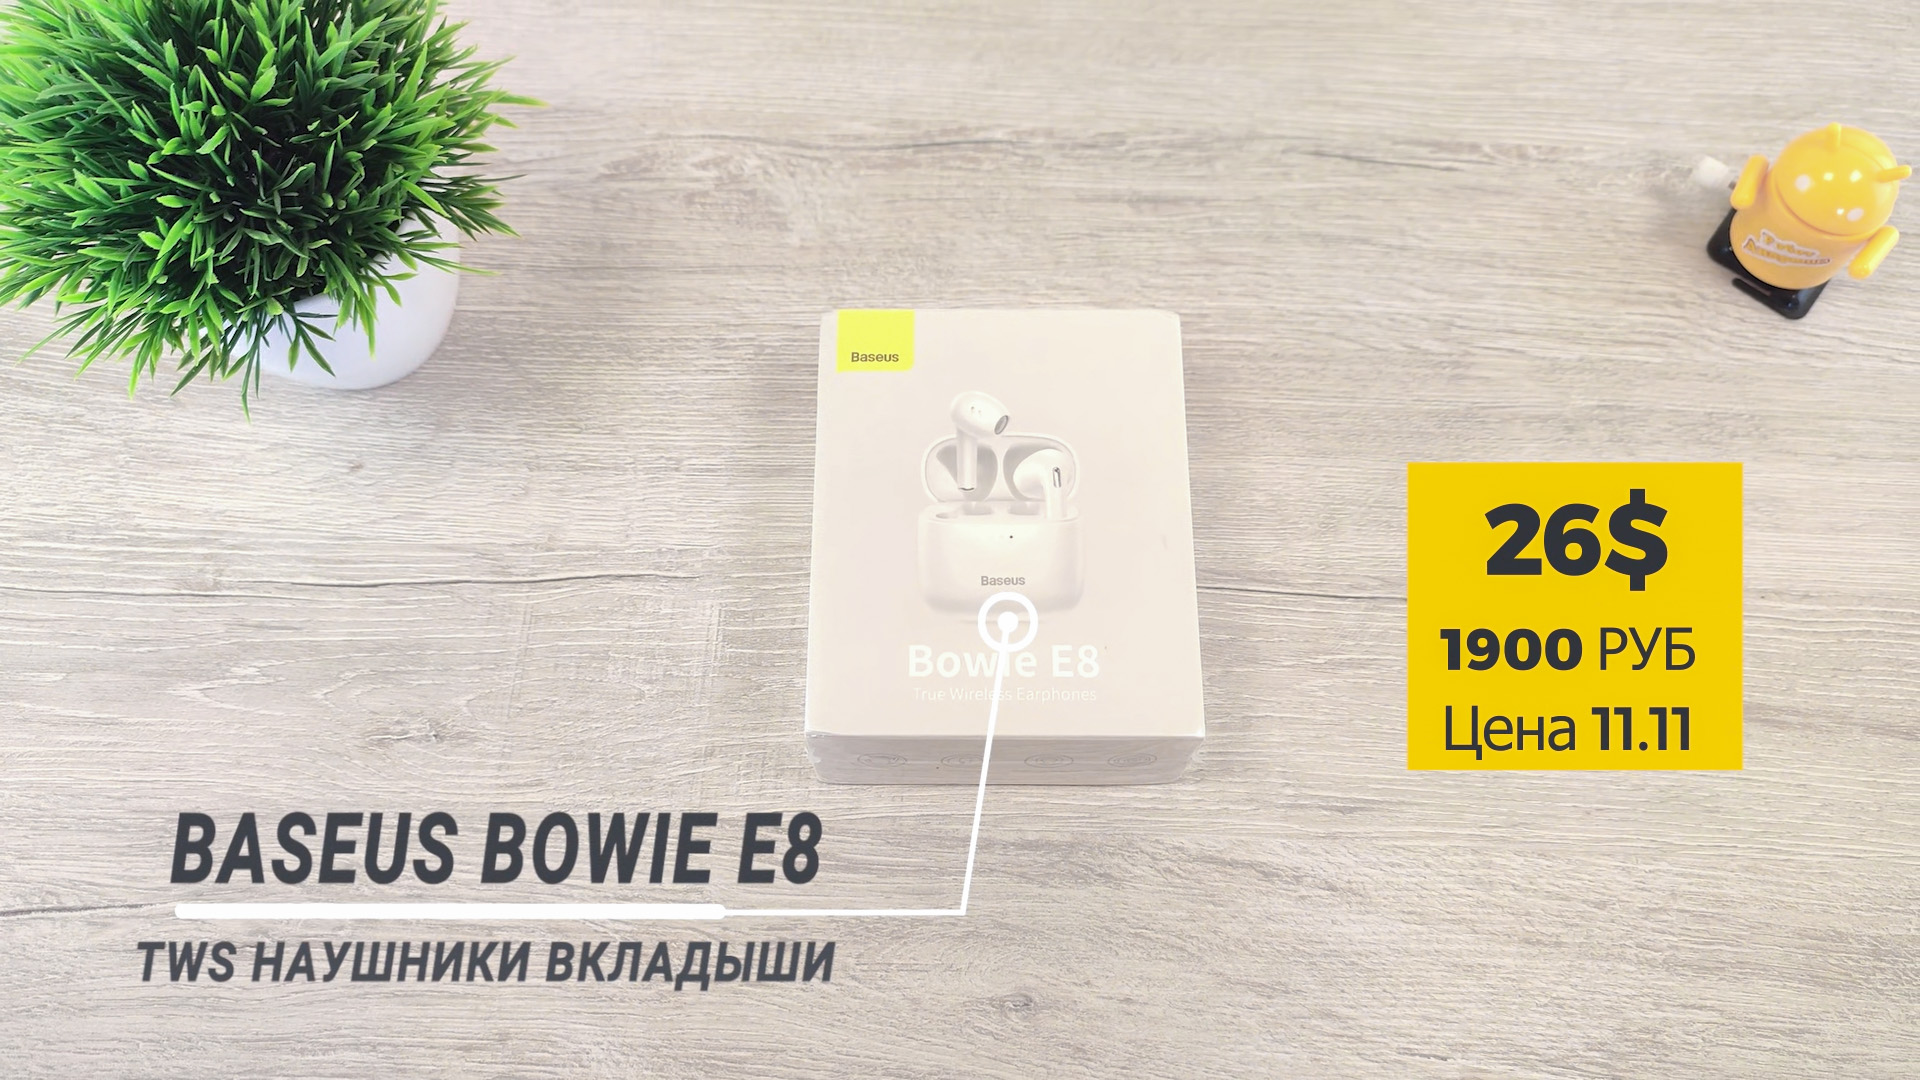 Baseus Bowie E8 box